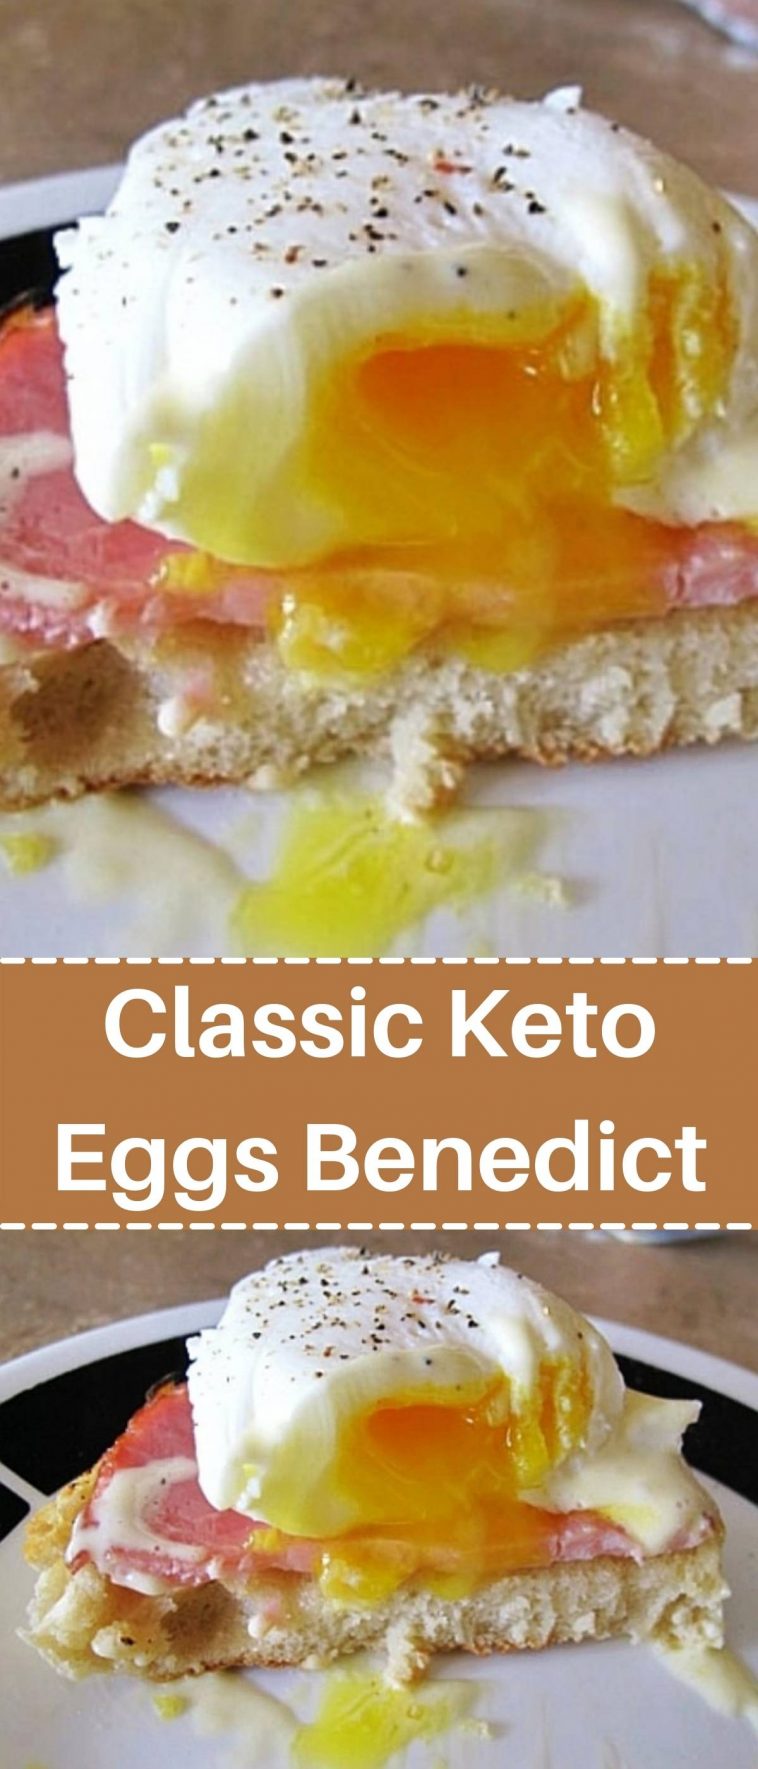 Classic Keto Eggs Benedict